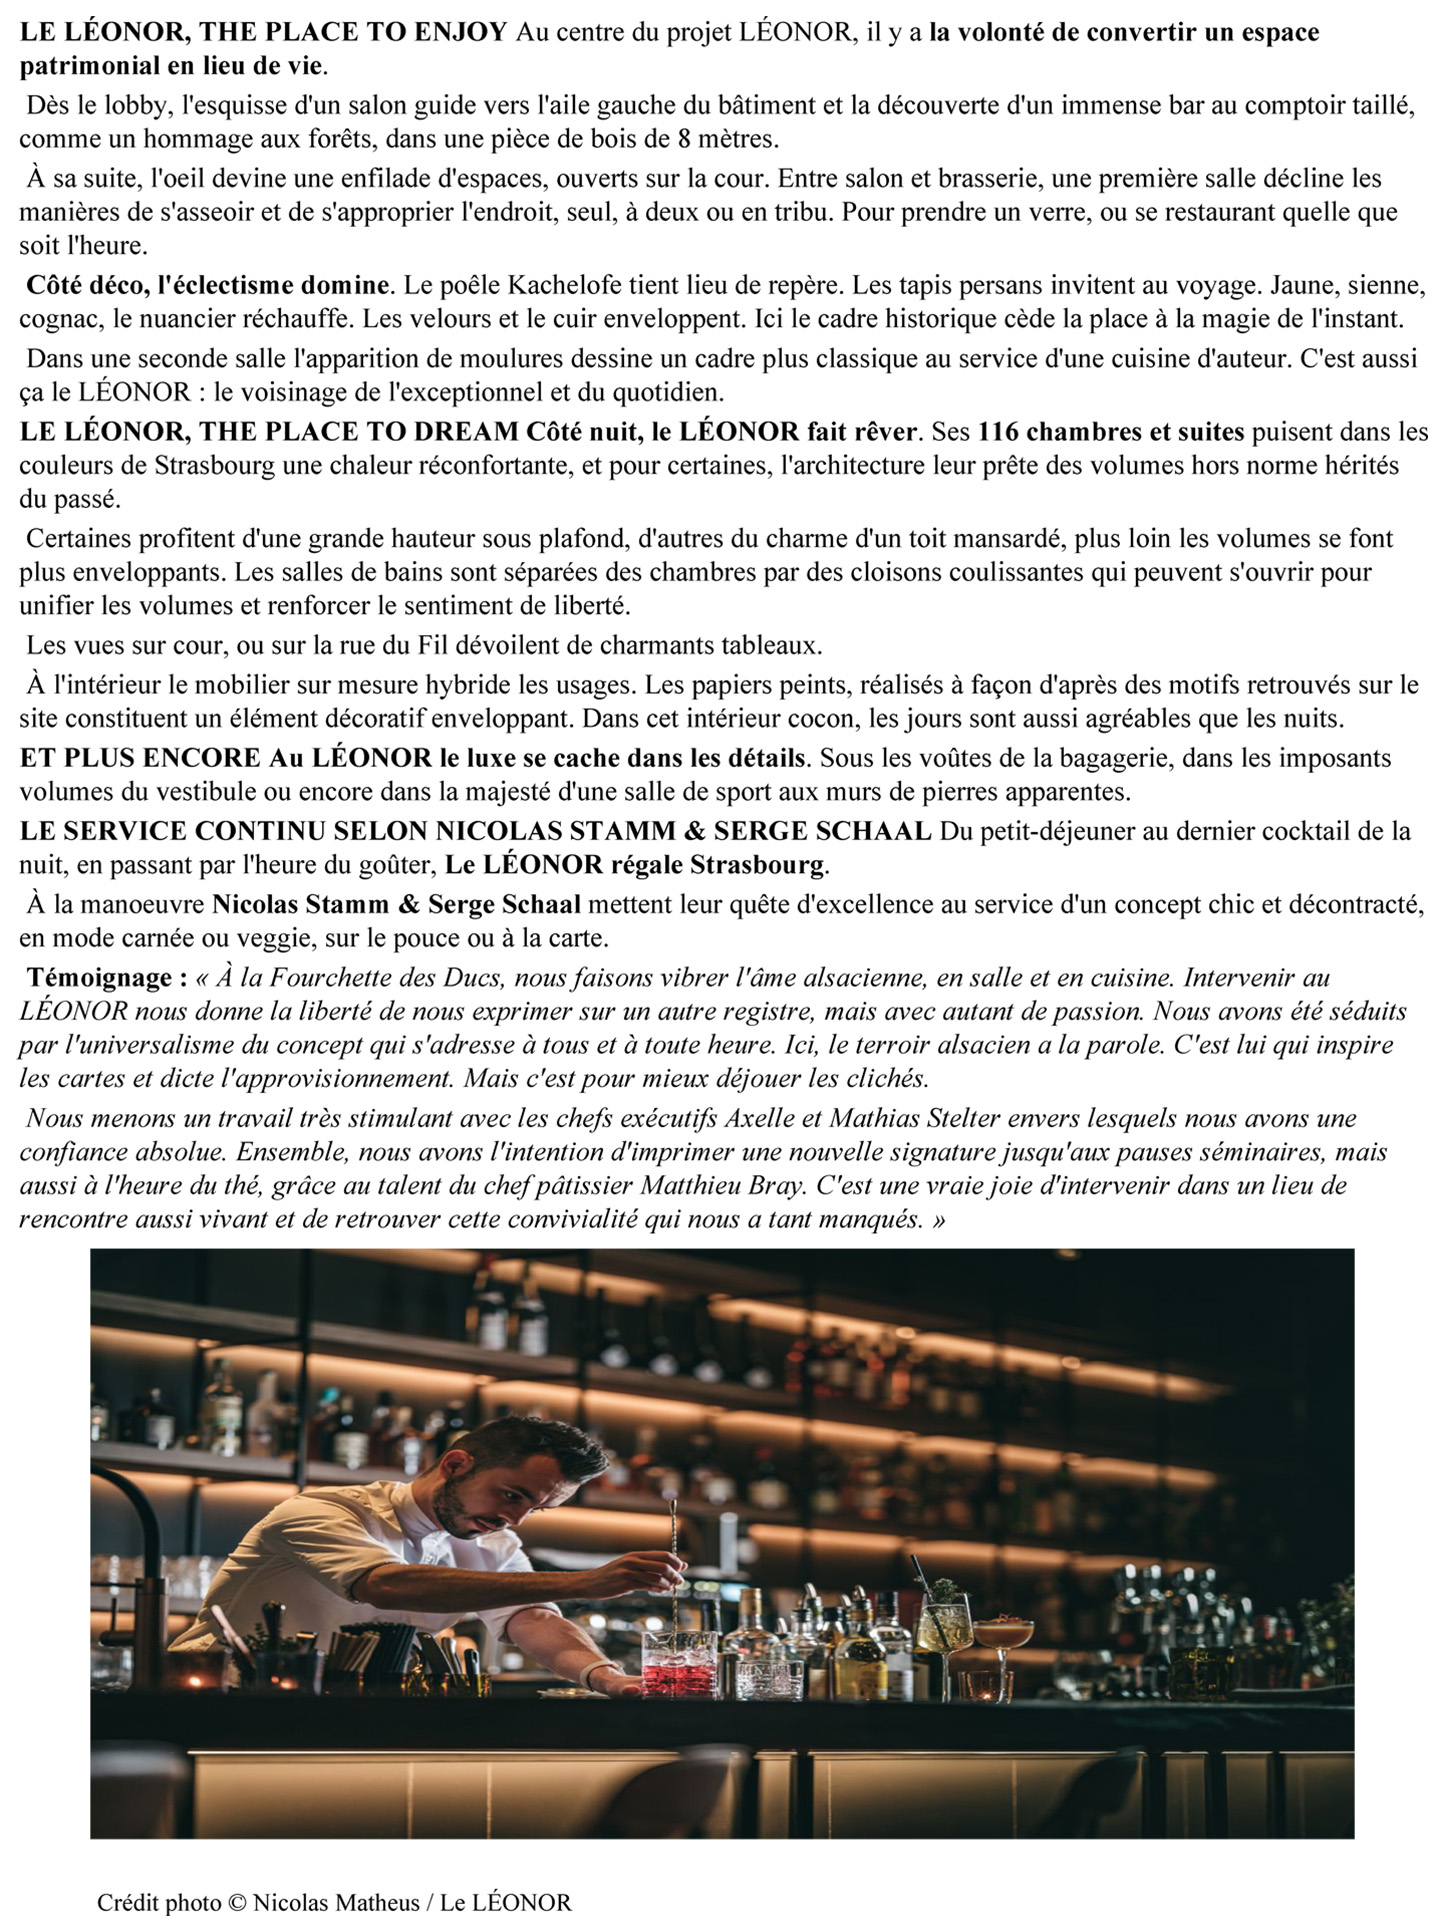 Article sur le Leonor Strasbourg designé par l'architecte d'intérieur Jean-Philippe Nuel, hôtel de luxe français, dans le magazine Journal des palaces